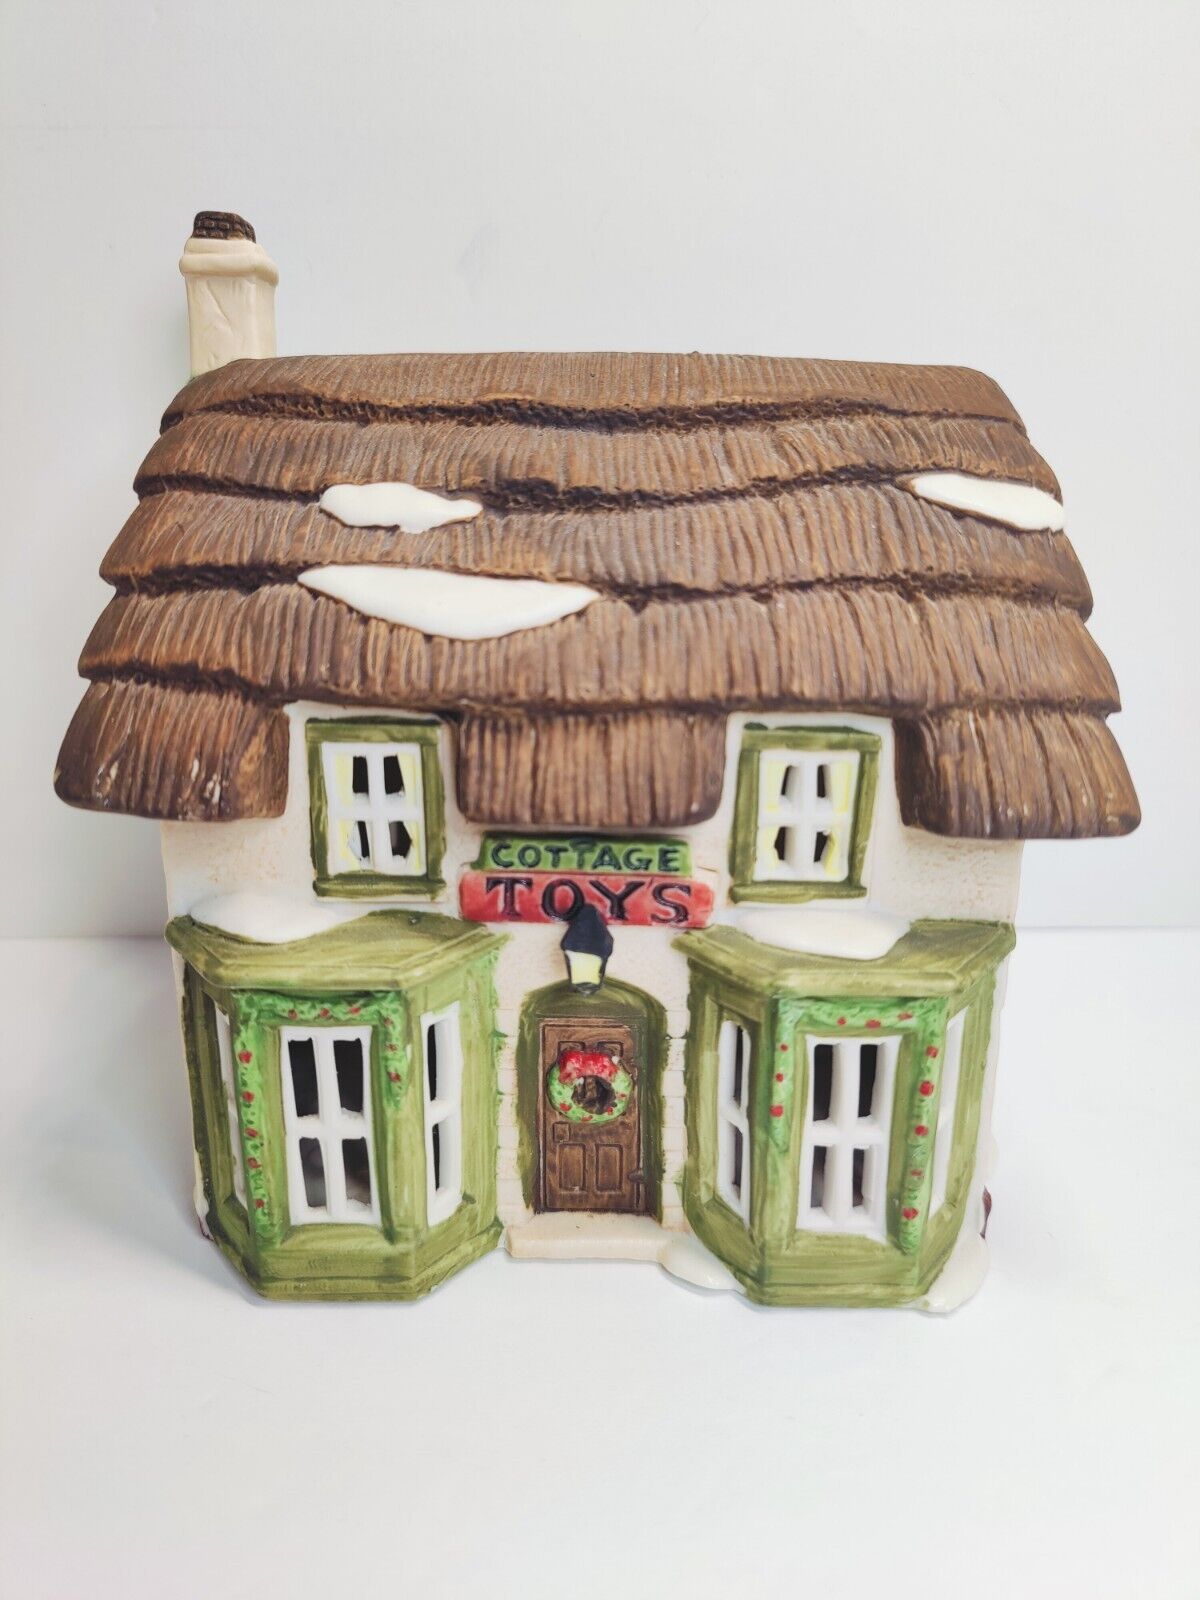 Dept 56 Miniature Cottage Toys Shop Dickens Village Cold Cast Porcelain 1986